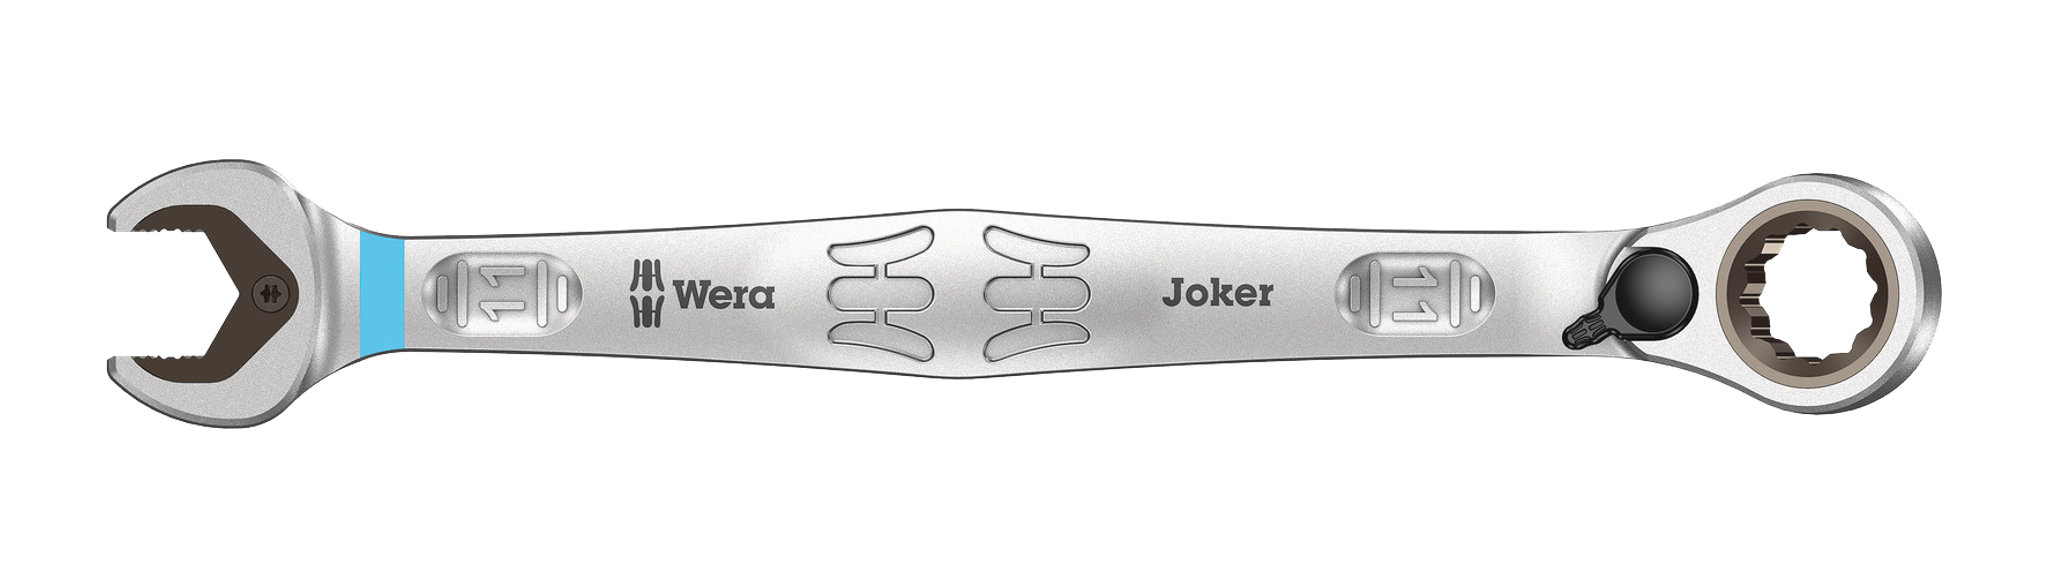 Modernas llaves planas, anulares y ajustables de la serie Joker de Wera   Distribuidor de componentes electrónicos. Tienda en línea: Transfer  Multisort Elektronik